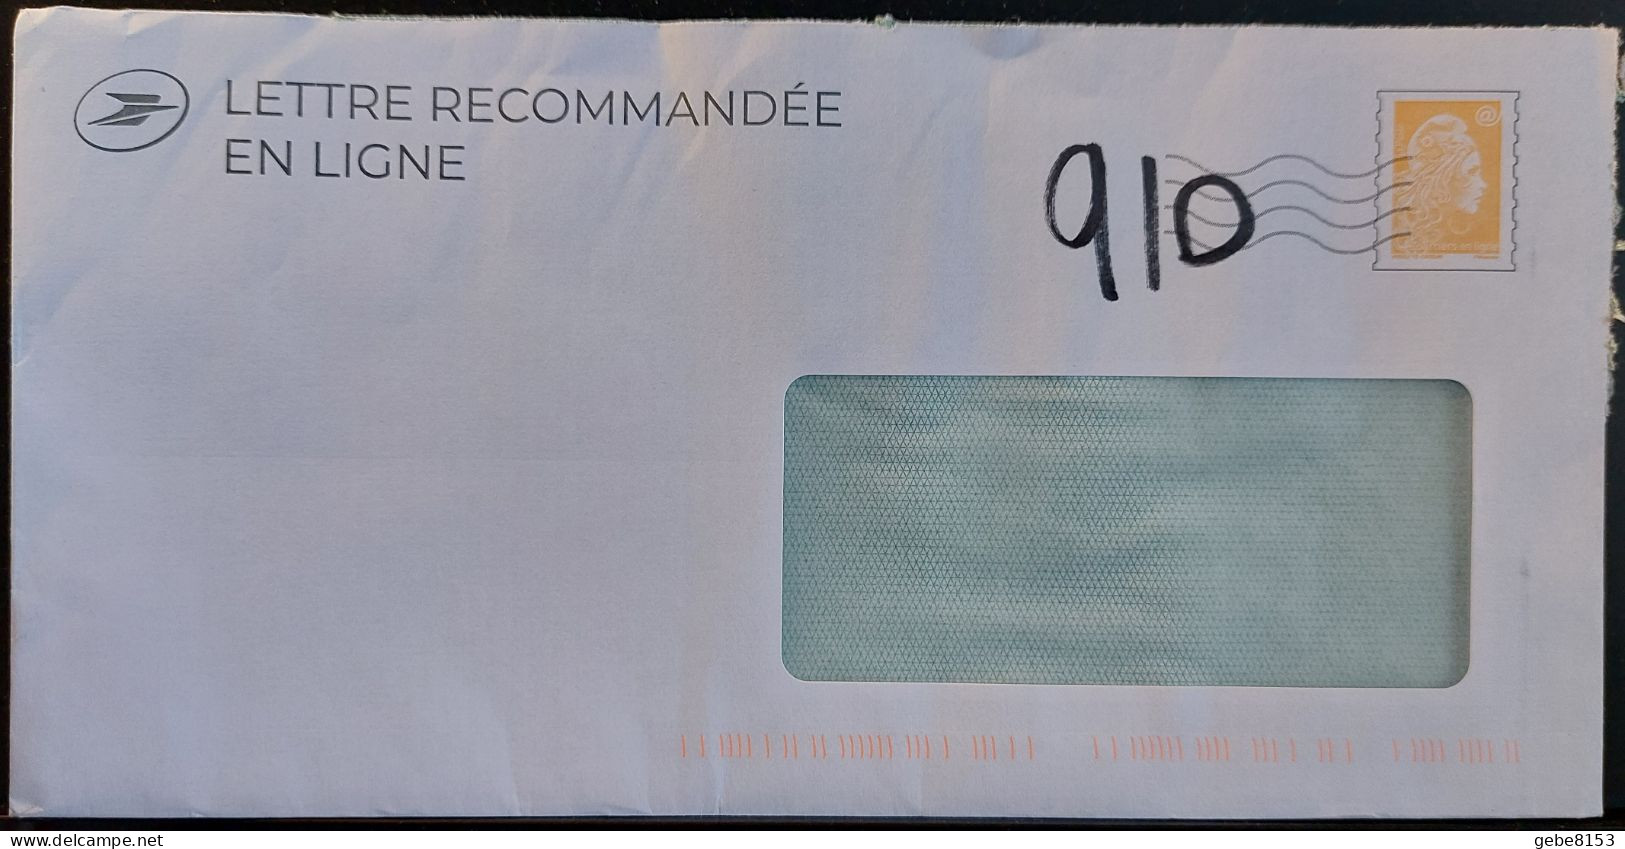 Lettre Recommandée En Ligne Prétimbrée Marianne L'engagée Jaune + Code 910 Ajouté Manuellement Au Marker - PAP: Ristampa/Marianne L'Engagée